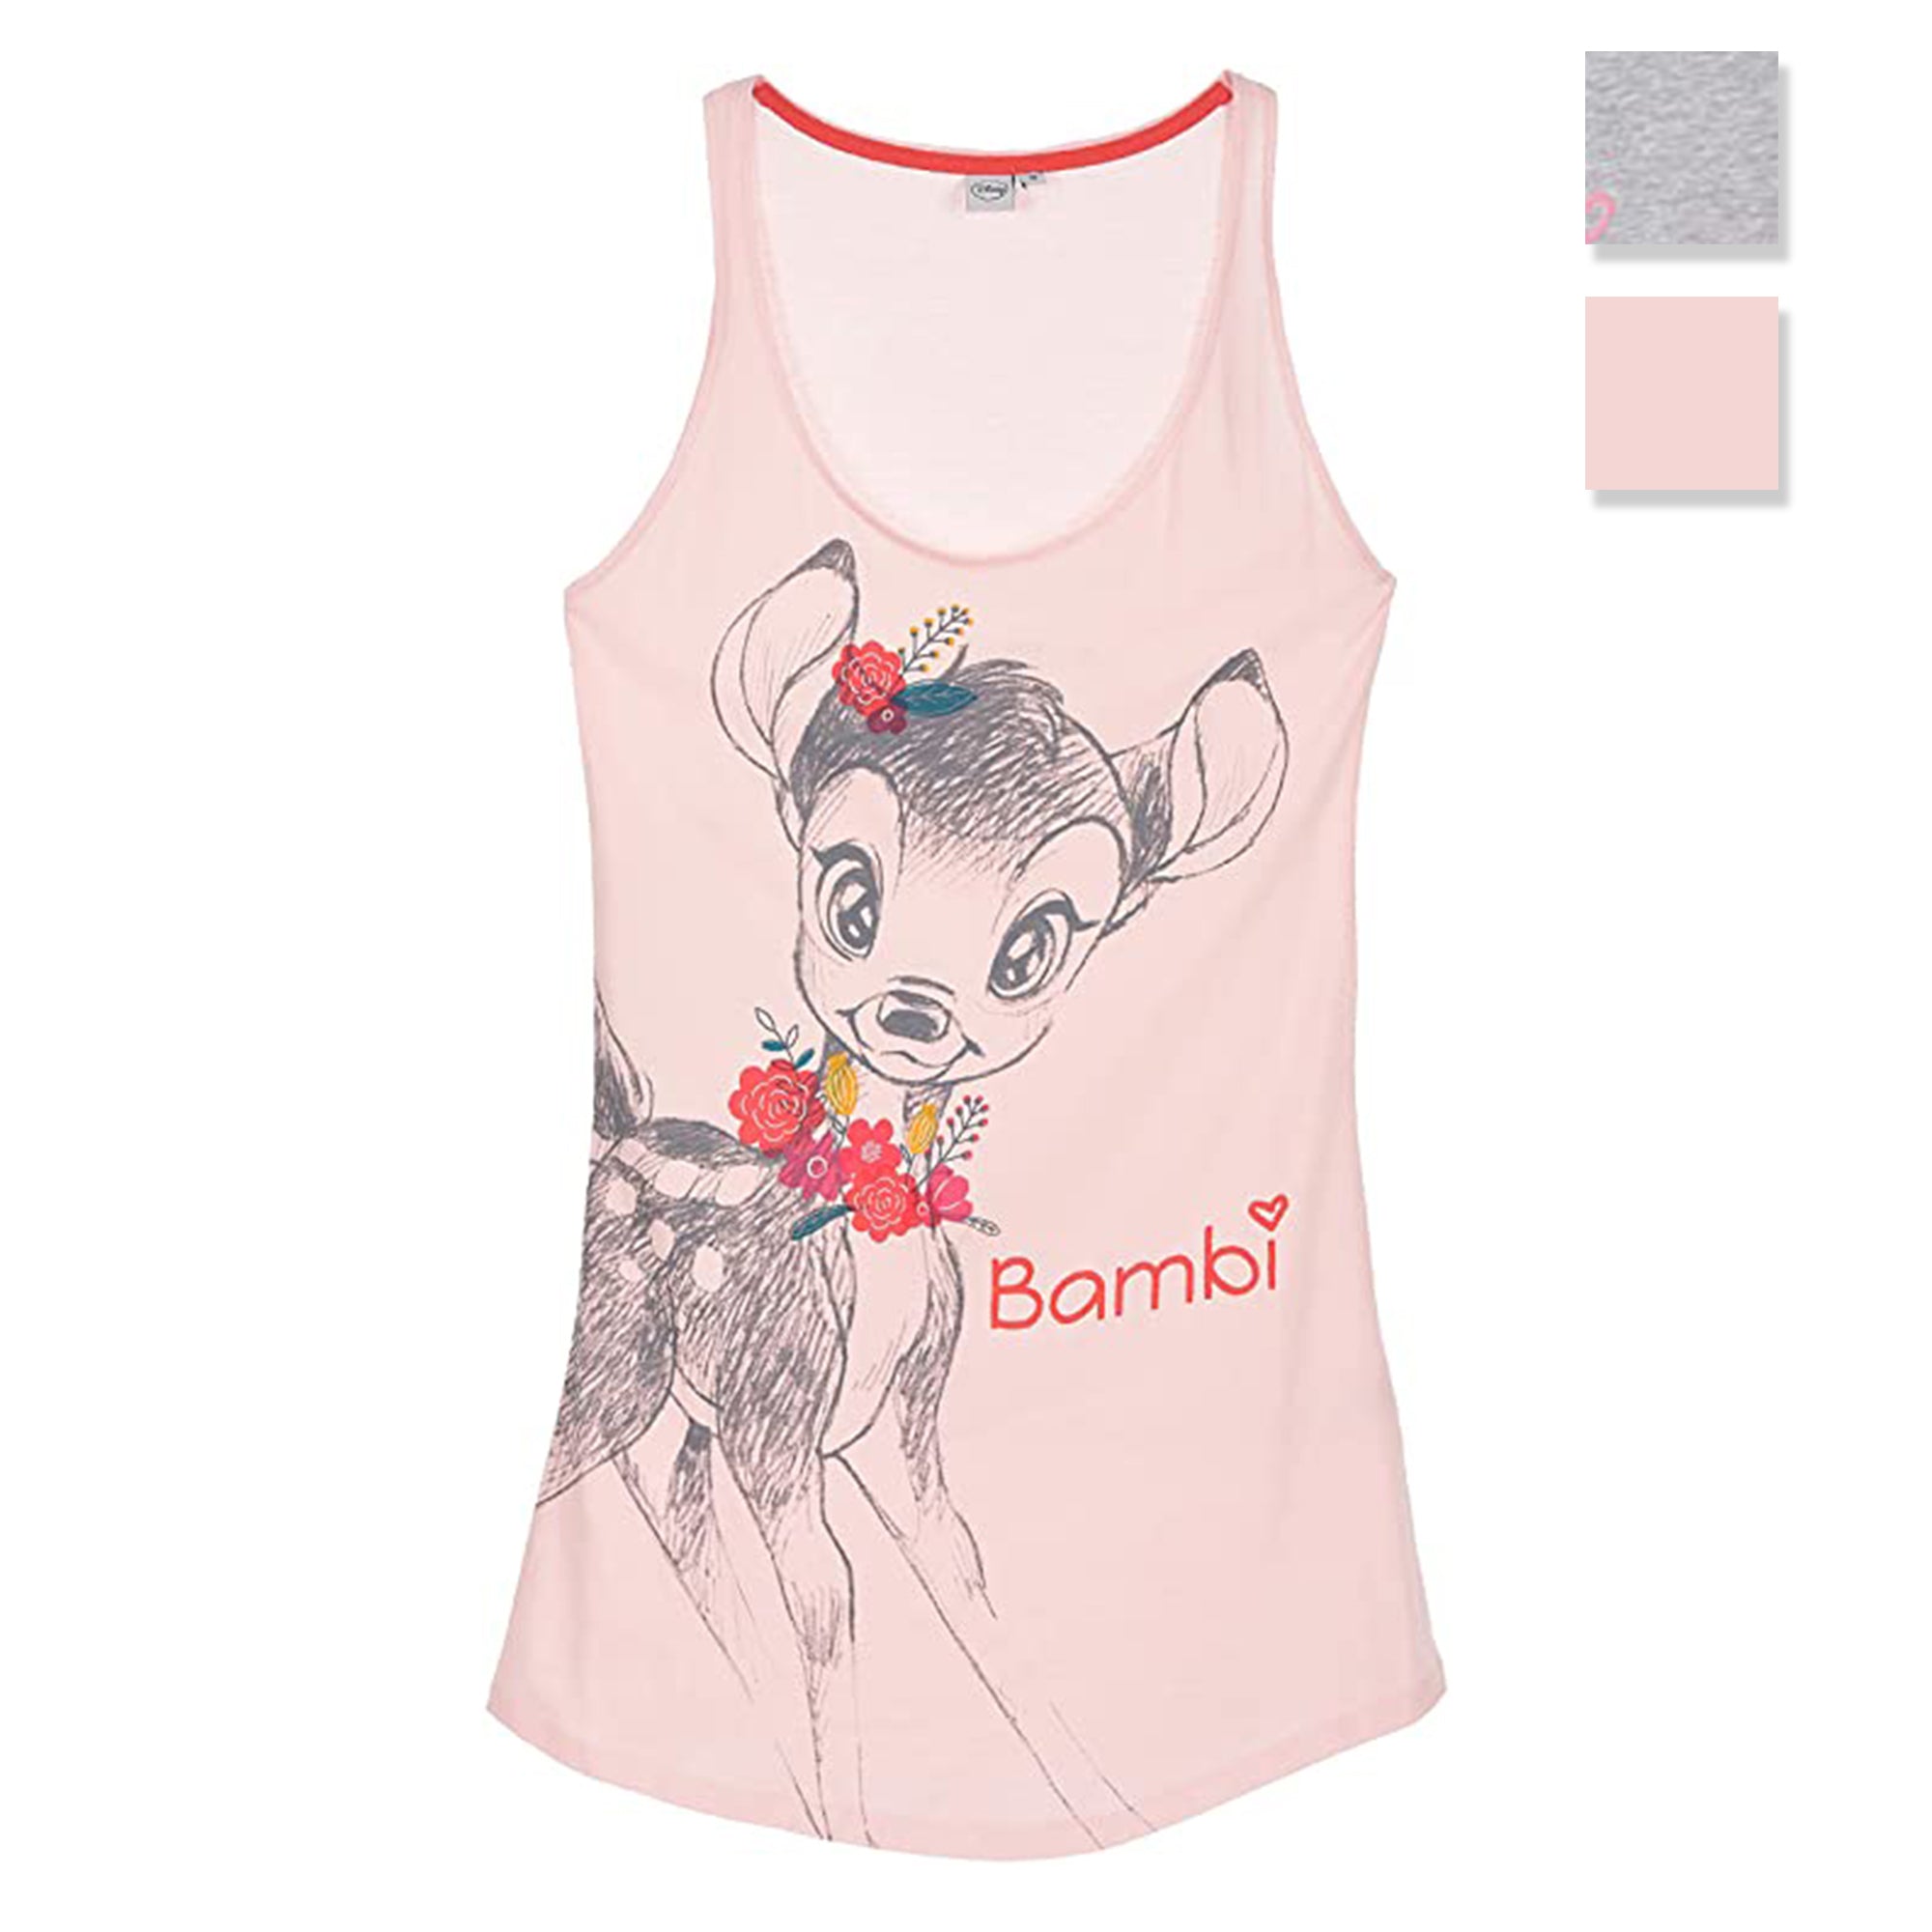 Pigiama camicia da notte donna Disney Bambi in cotone stampato 3231